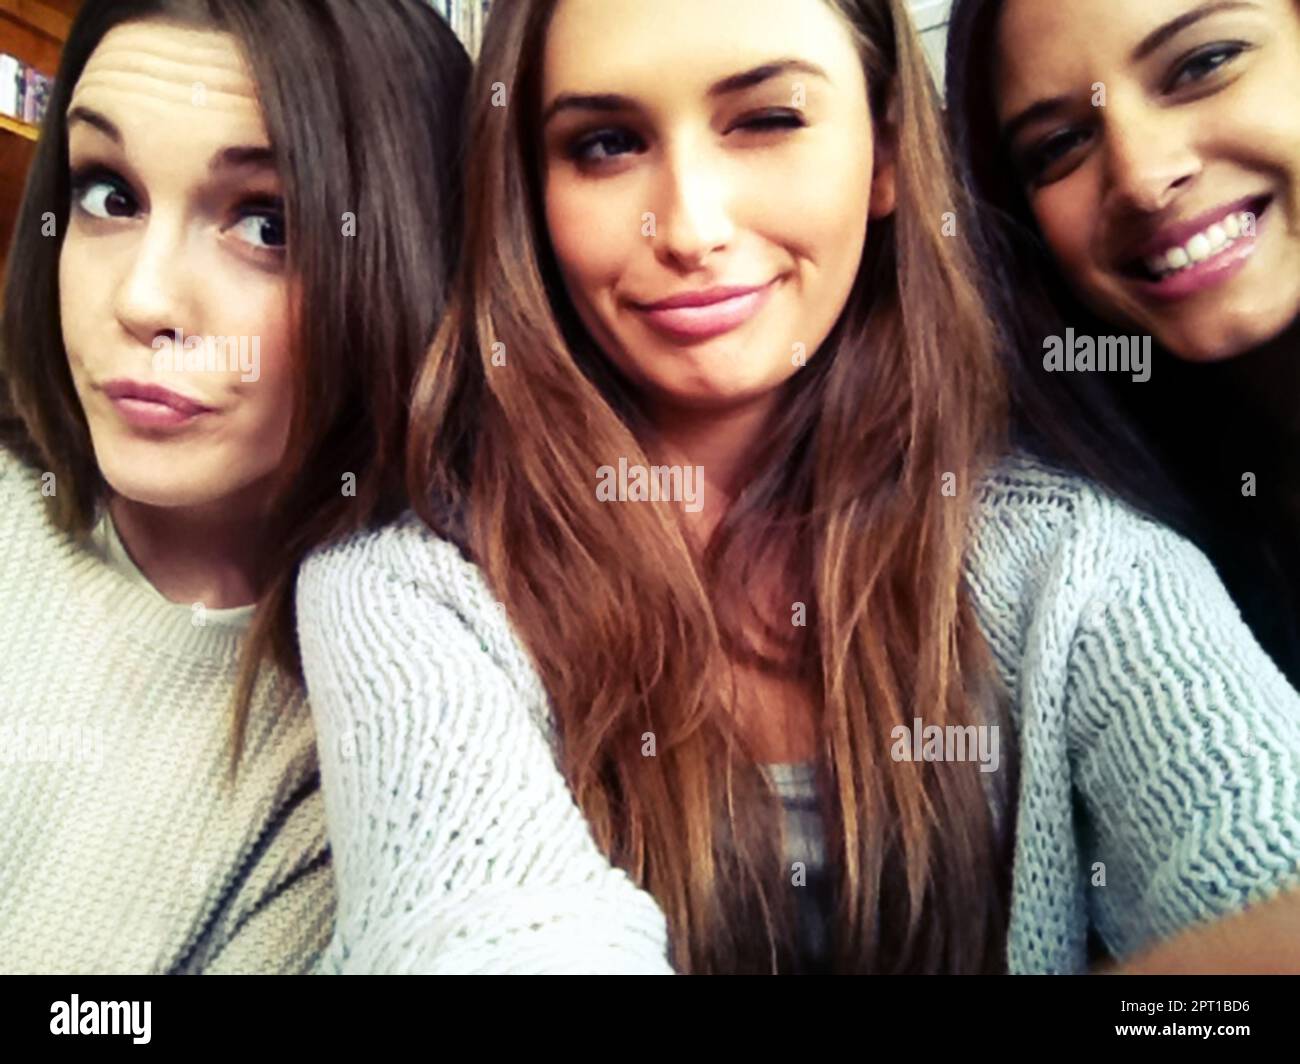 Bellezas jóvenes. Tres hermosas mujeres jóvenes tomando un selfie Foto de stock